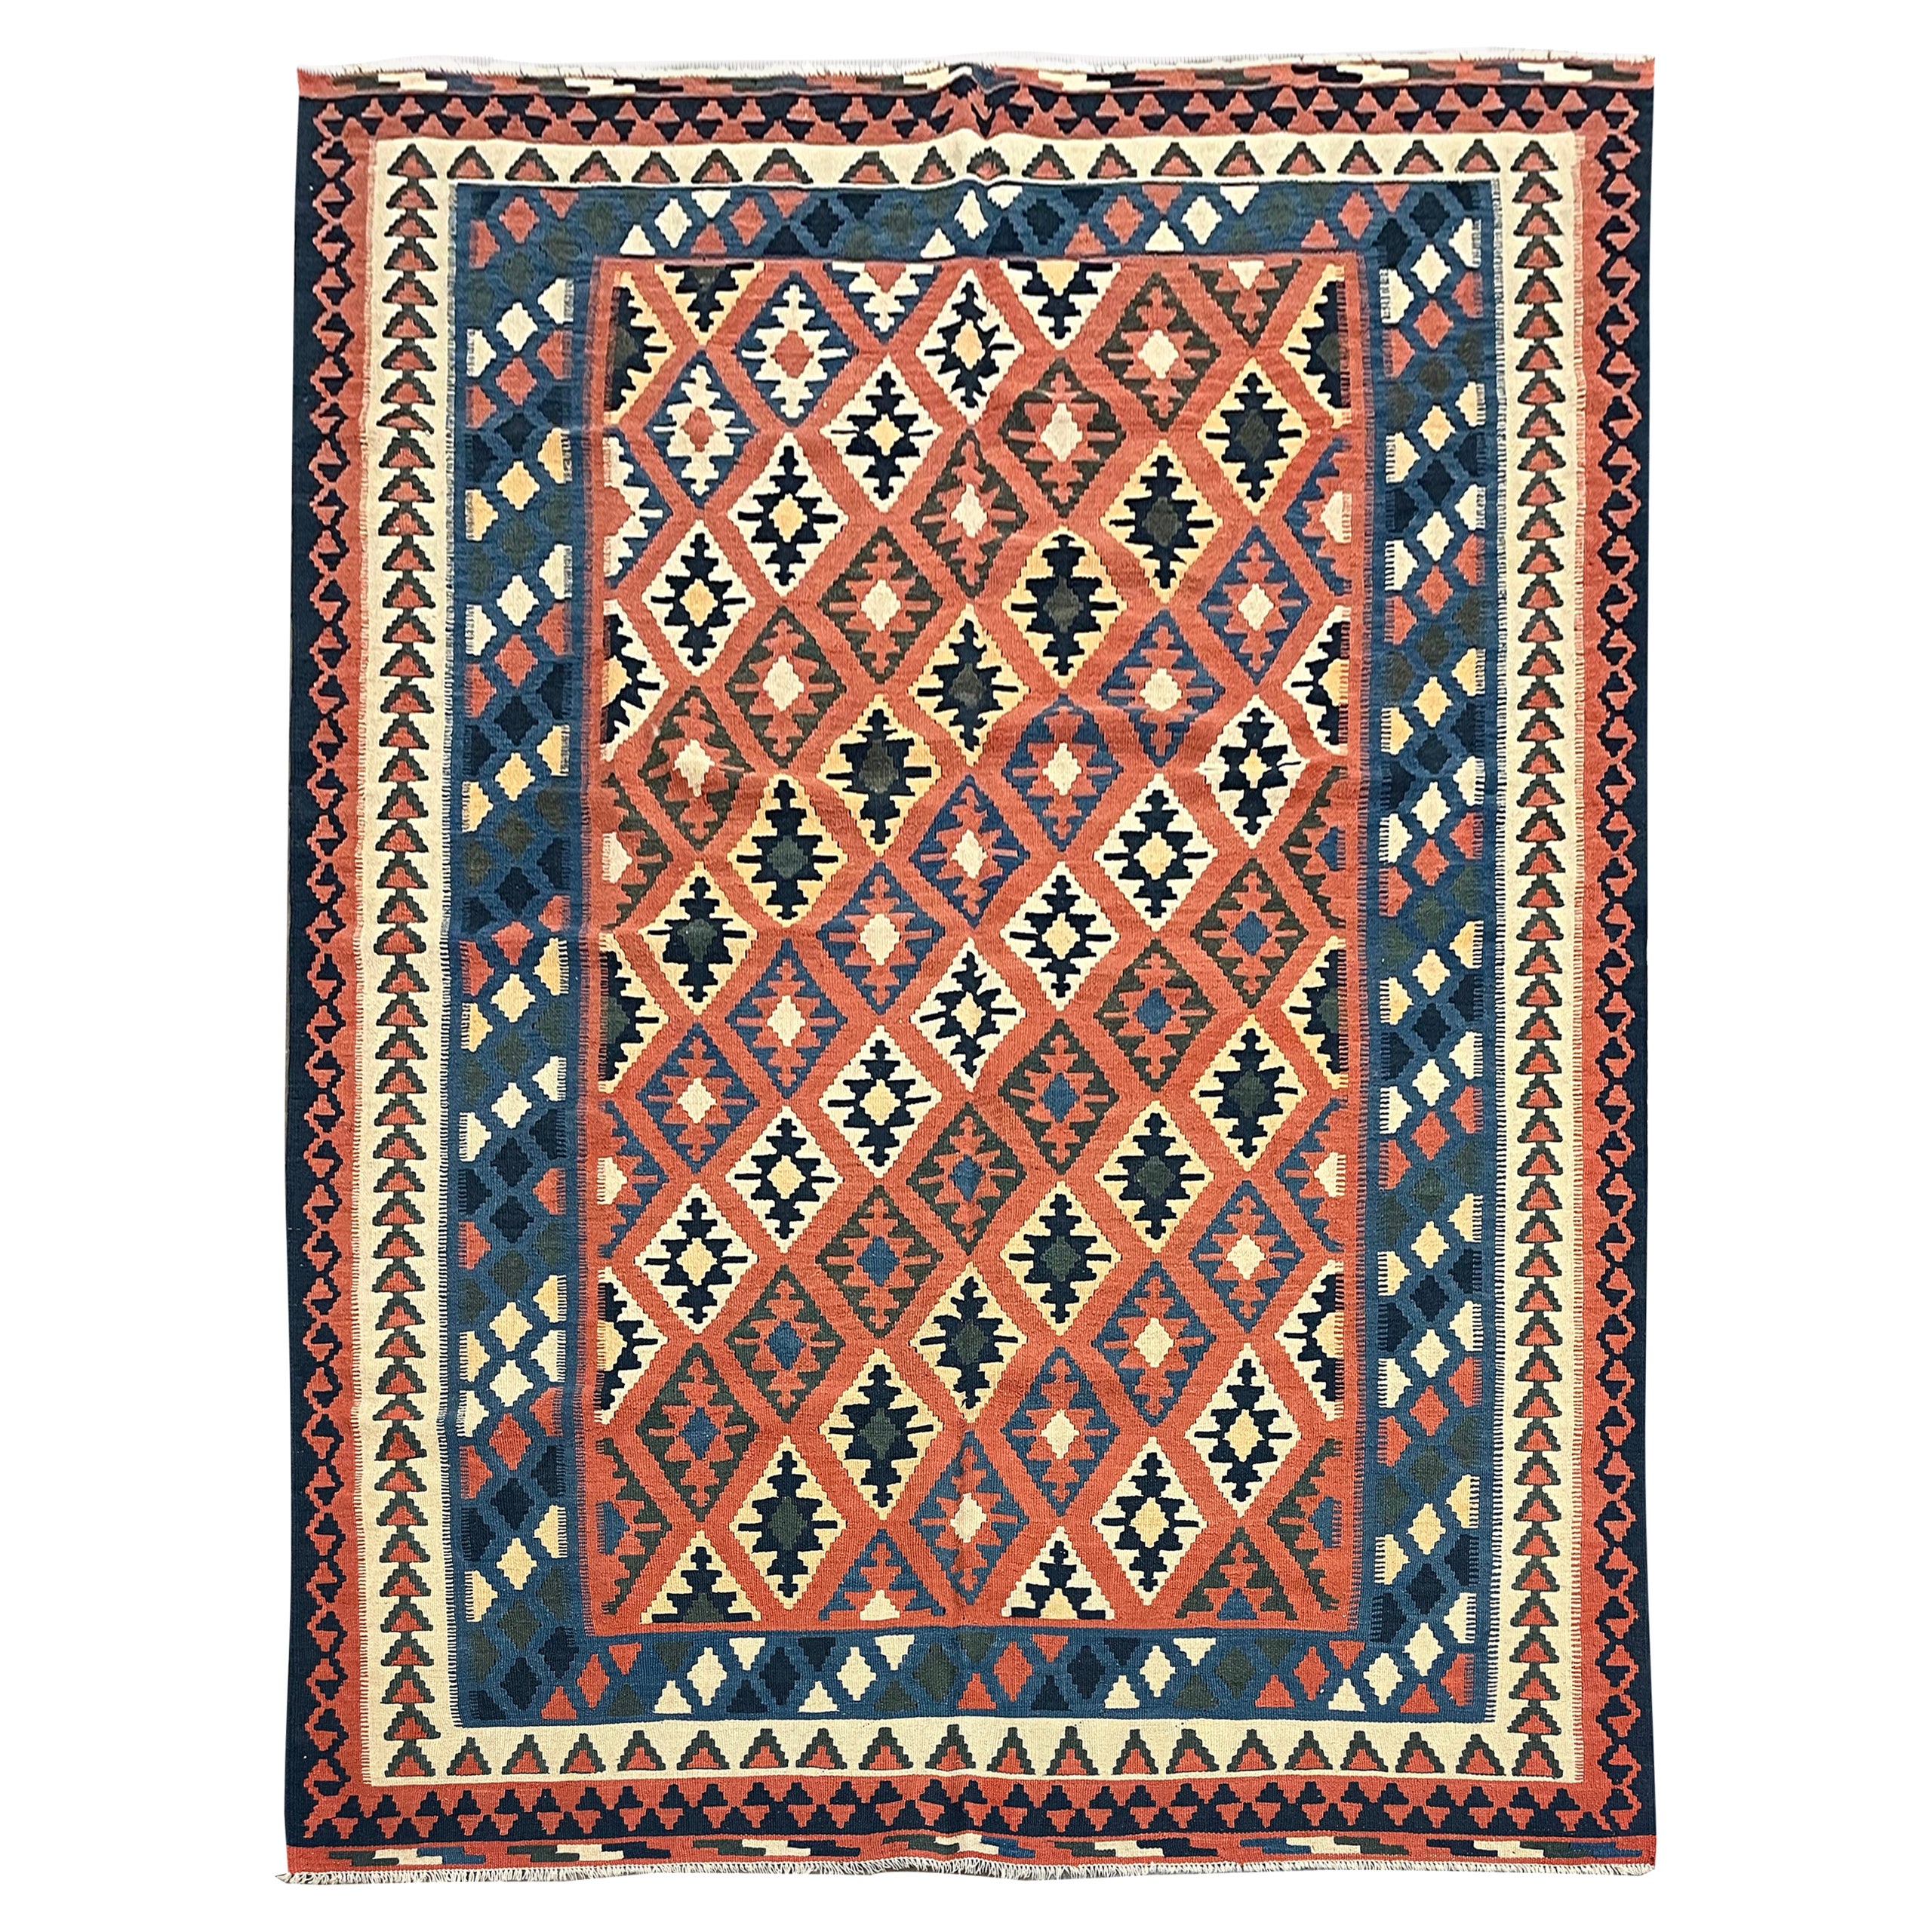 Vintage Kilim Rug Geometric Striped Orange Wool Rug Handmade Kilims For Sale